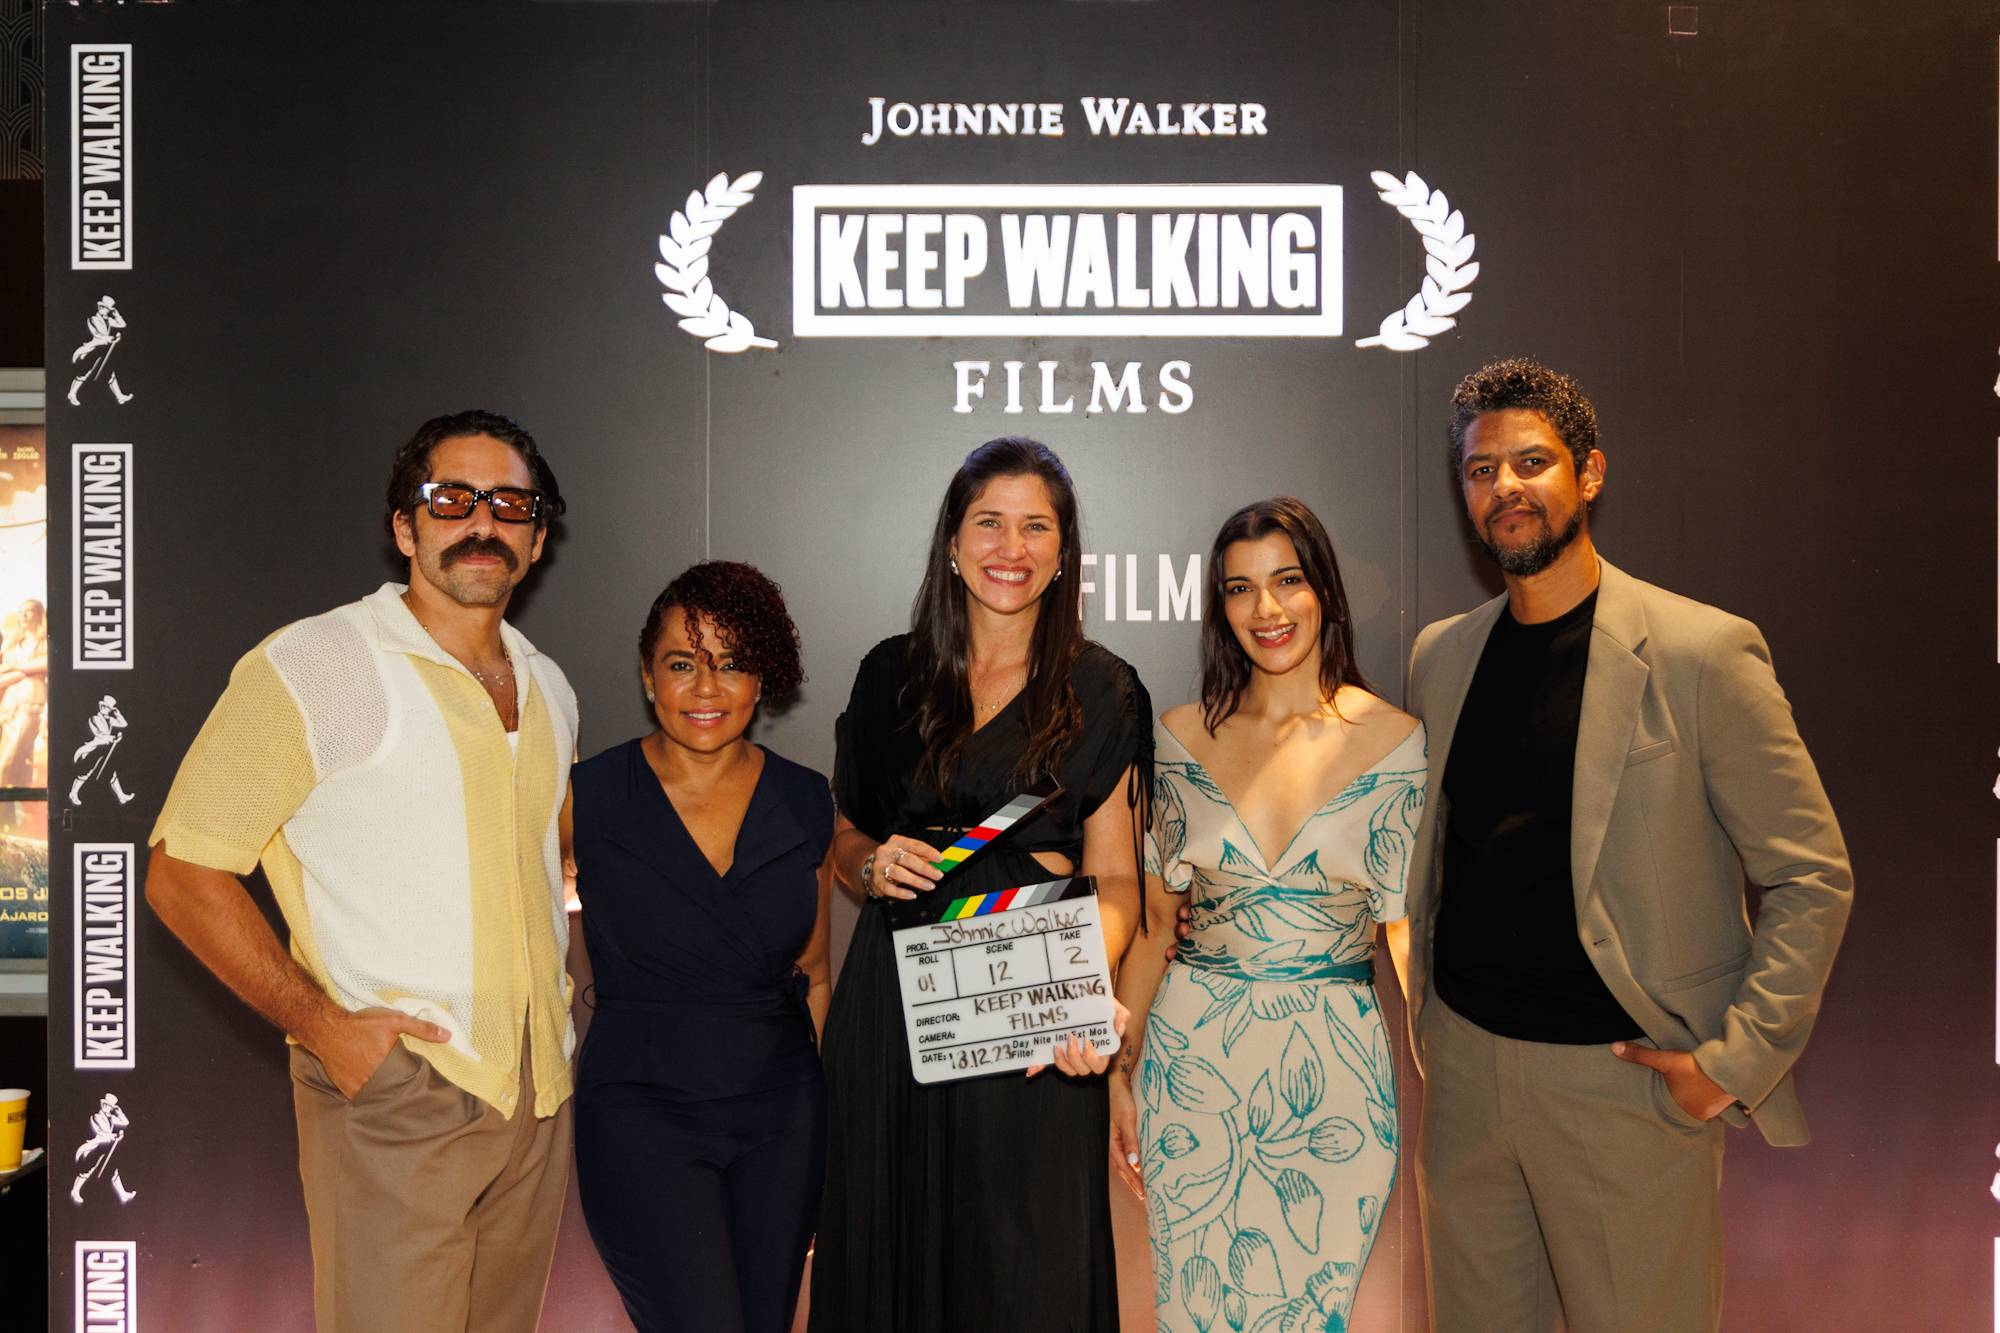 Lanzan concurso de cortometrajes Keep Walking Films en República Dominicana